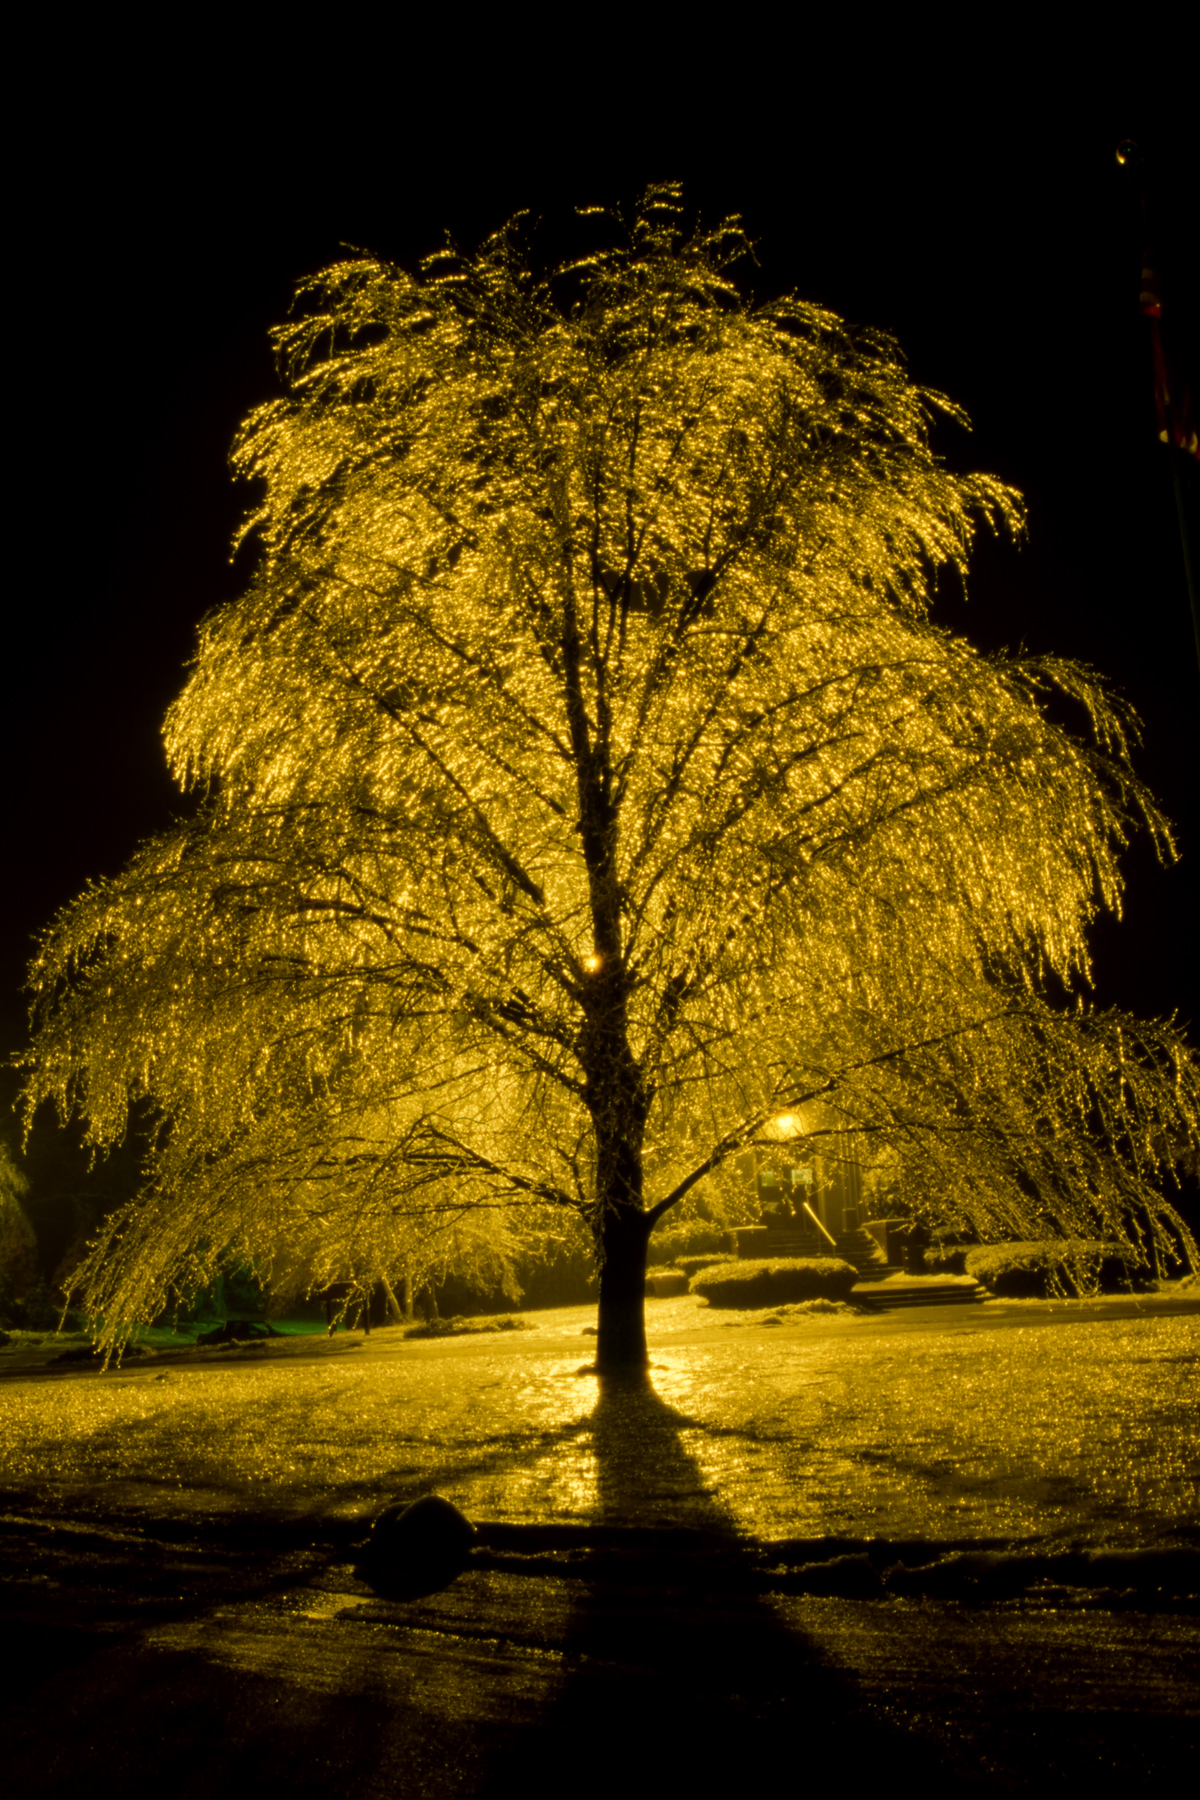 Ice tree photo